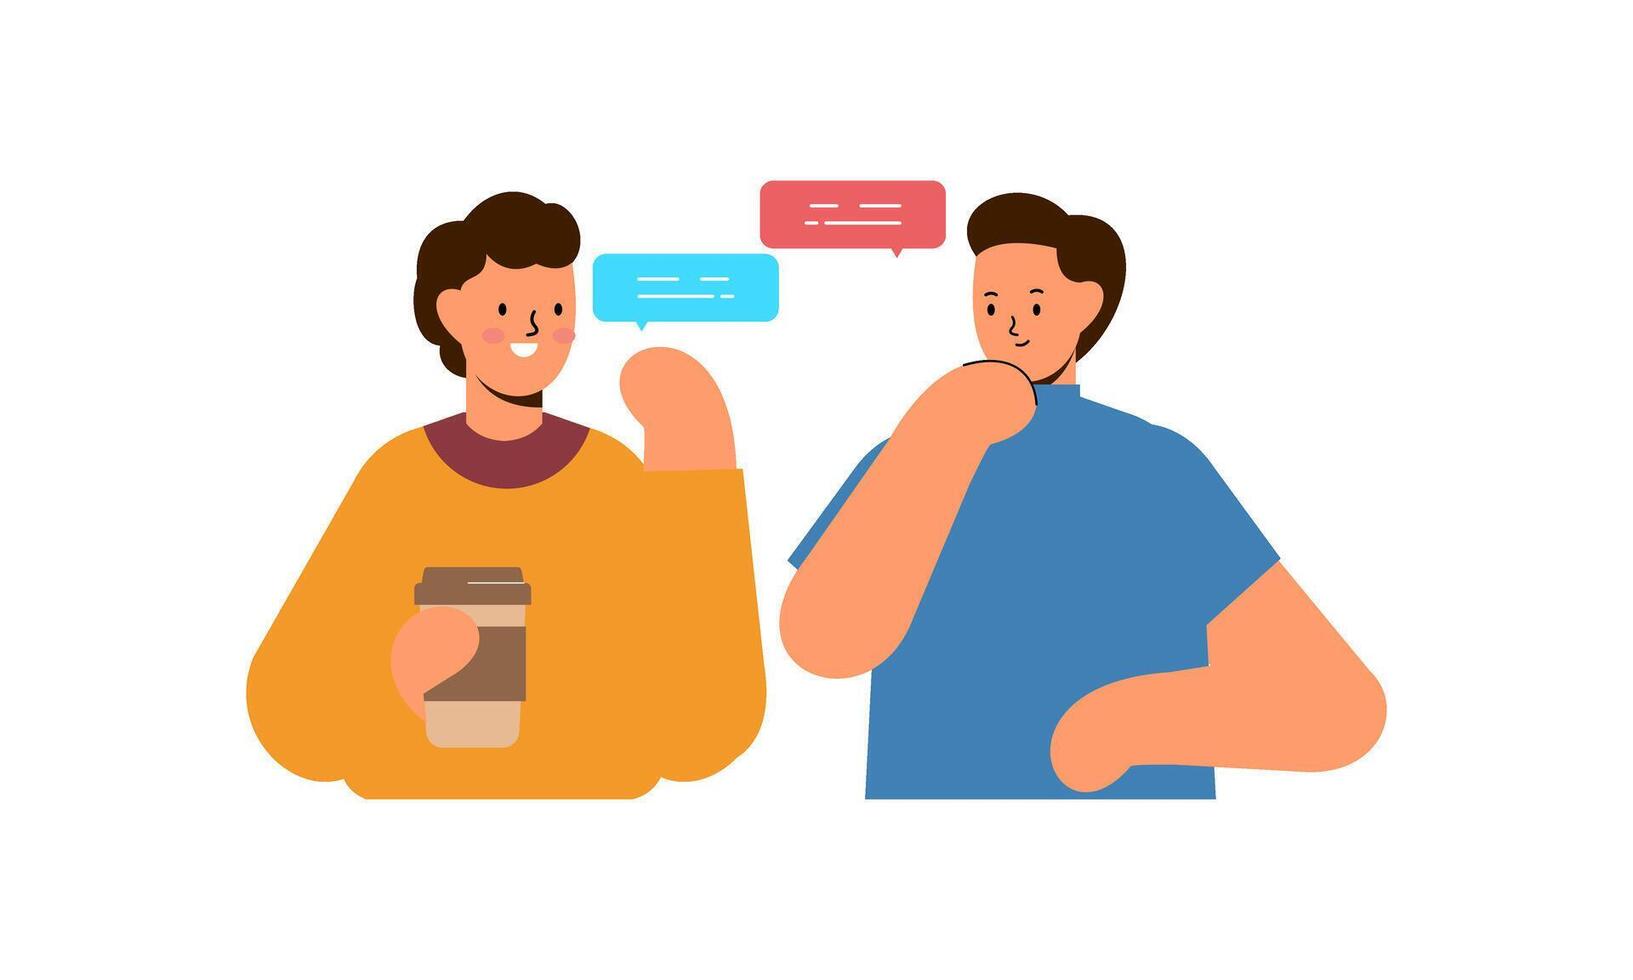 zwei Mann reden. Treffen von freunde oder Kollegen Illustration vektor